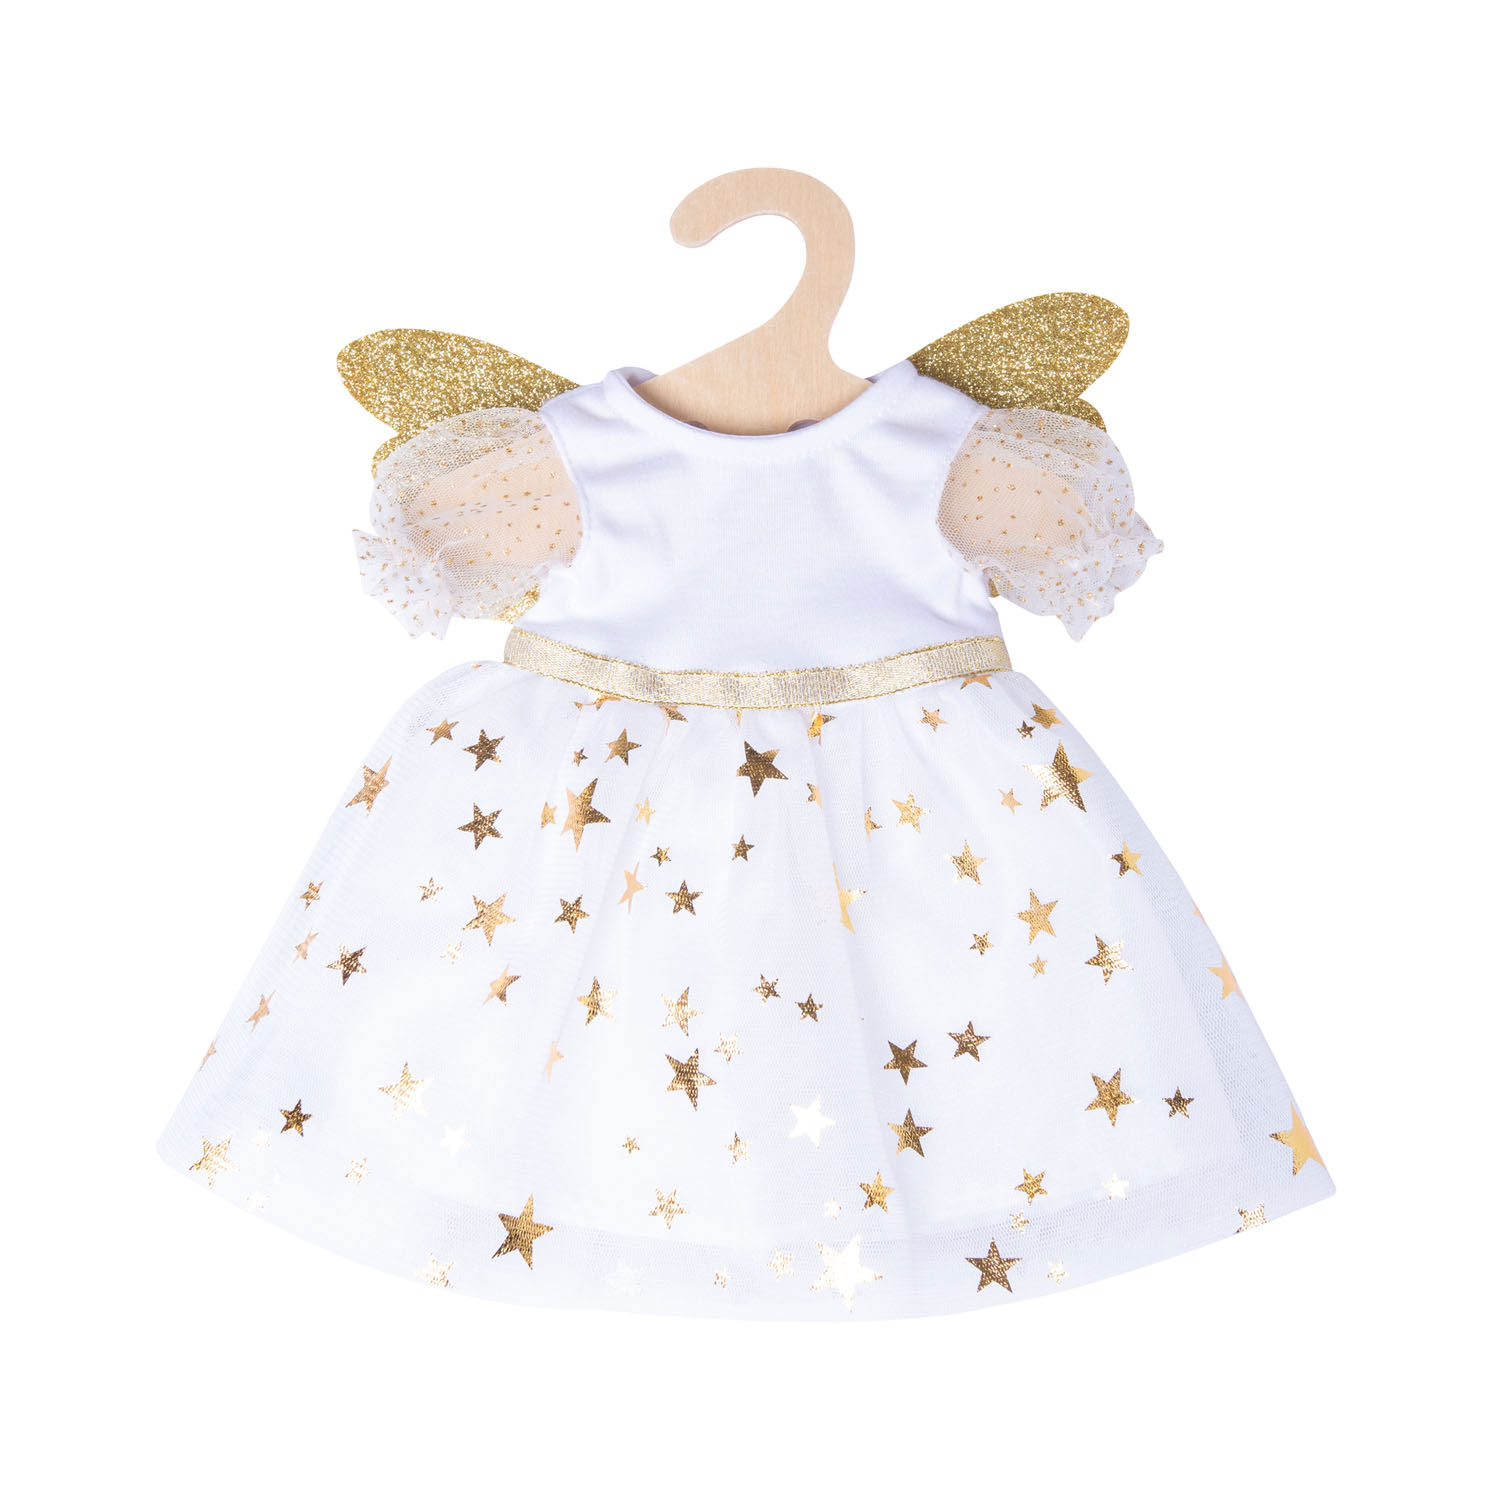 Robe de poupée Ange avec étoiles, 35-45 cm